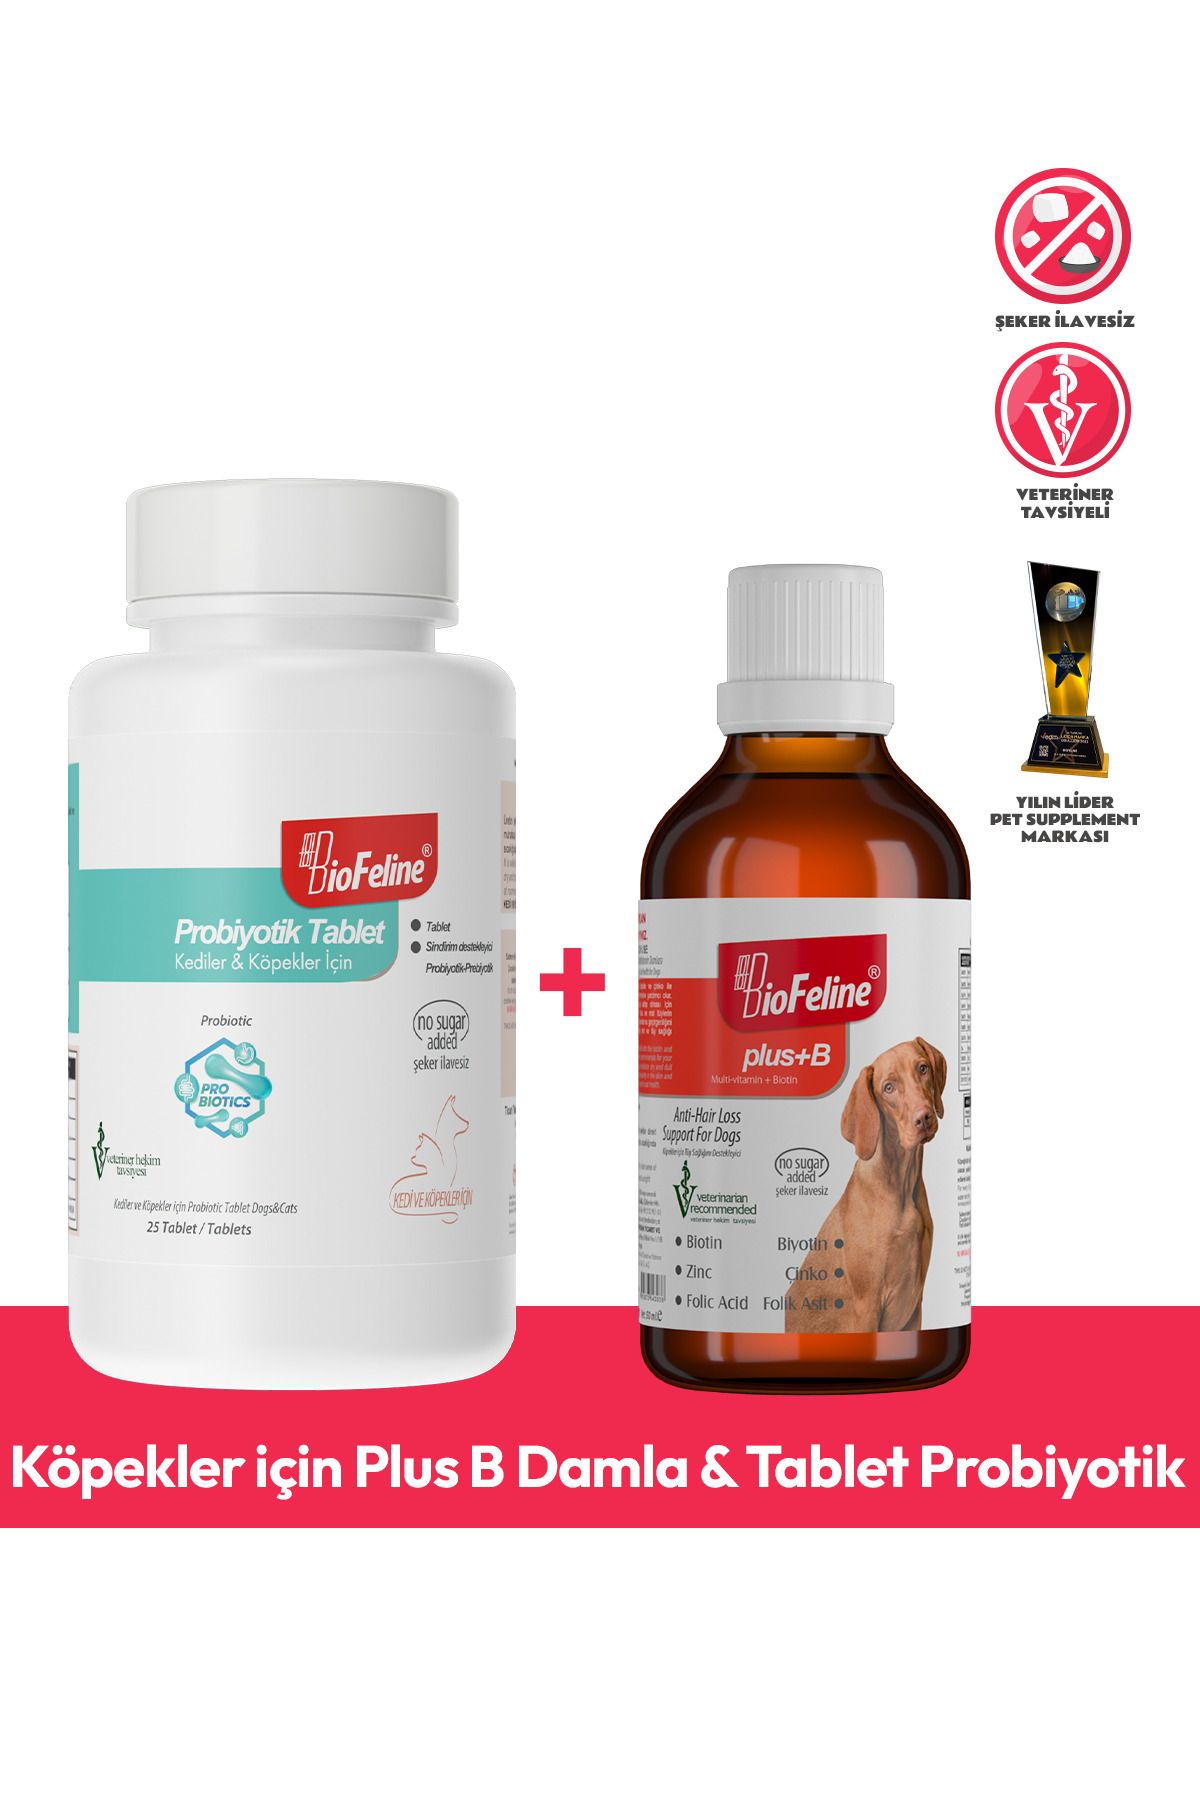 BioFeline Köpekler için Plus B Damla & Tablet Probiyotik